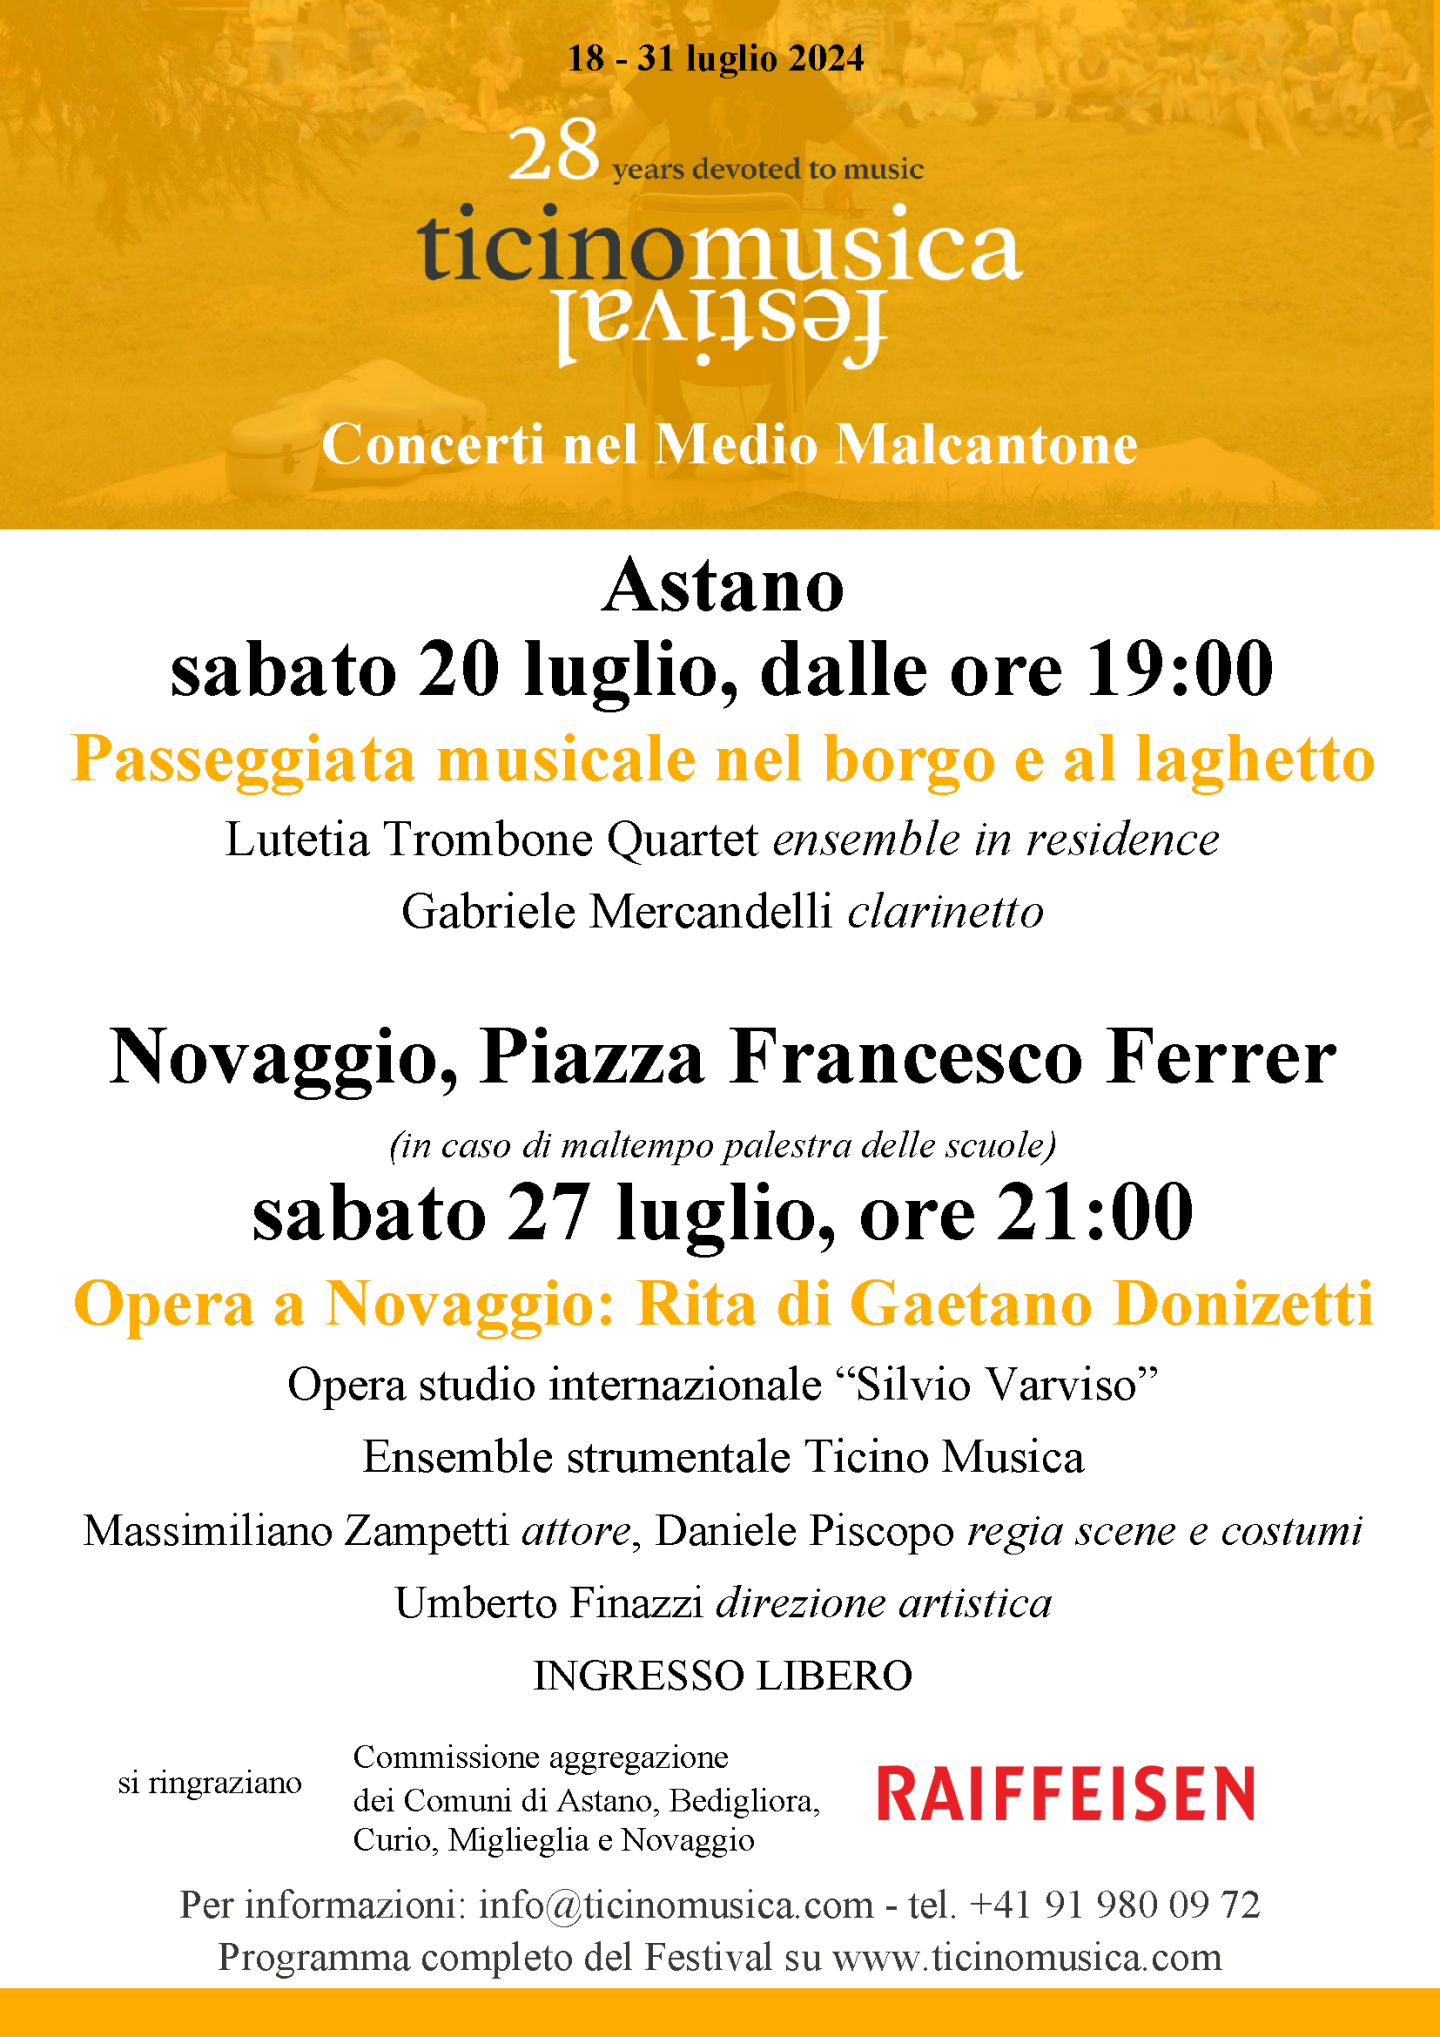 Ticino Musica 2024 - Concerti nel Medio Malcantone